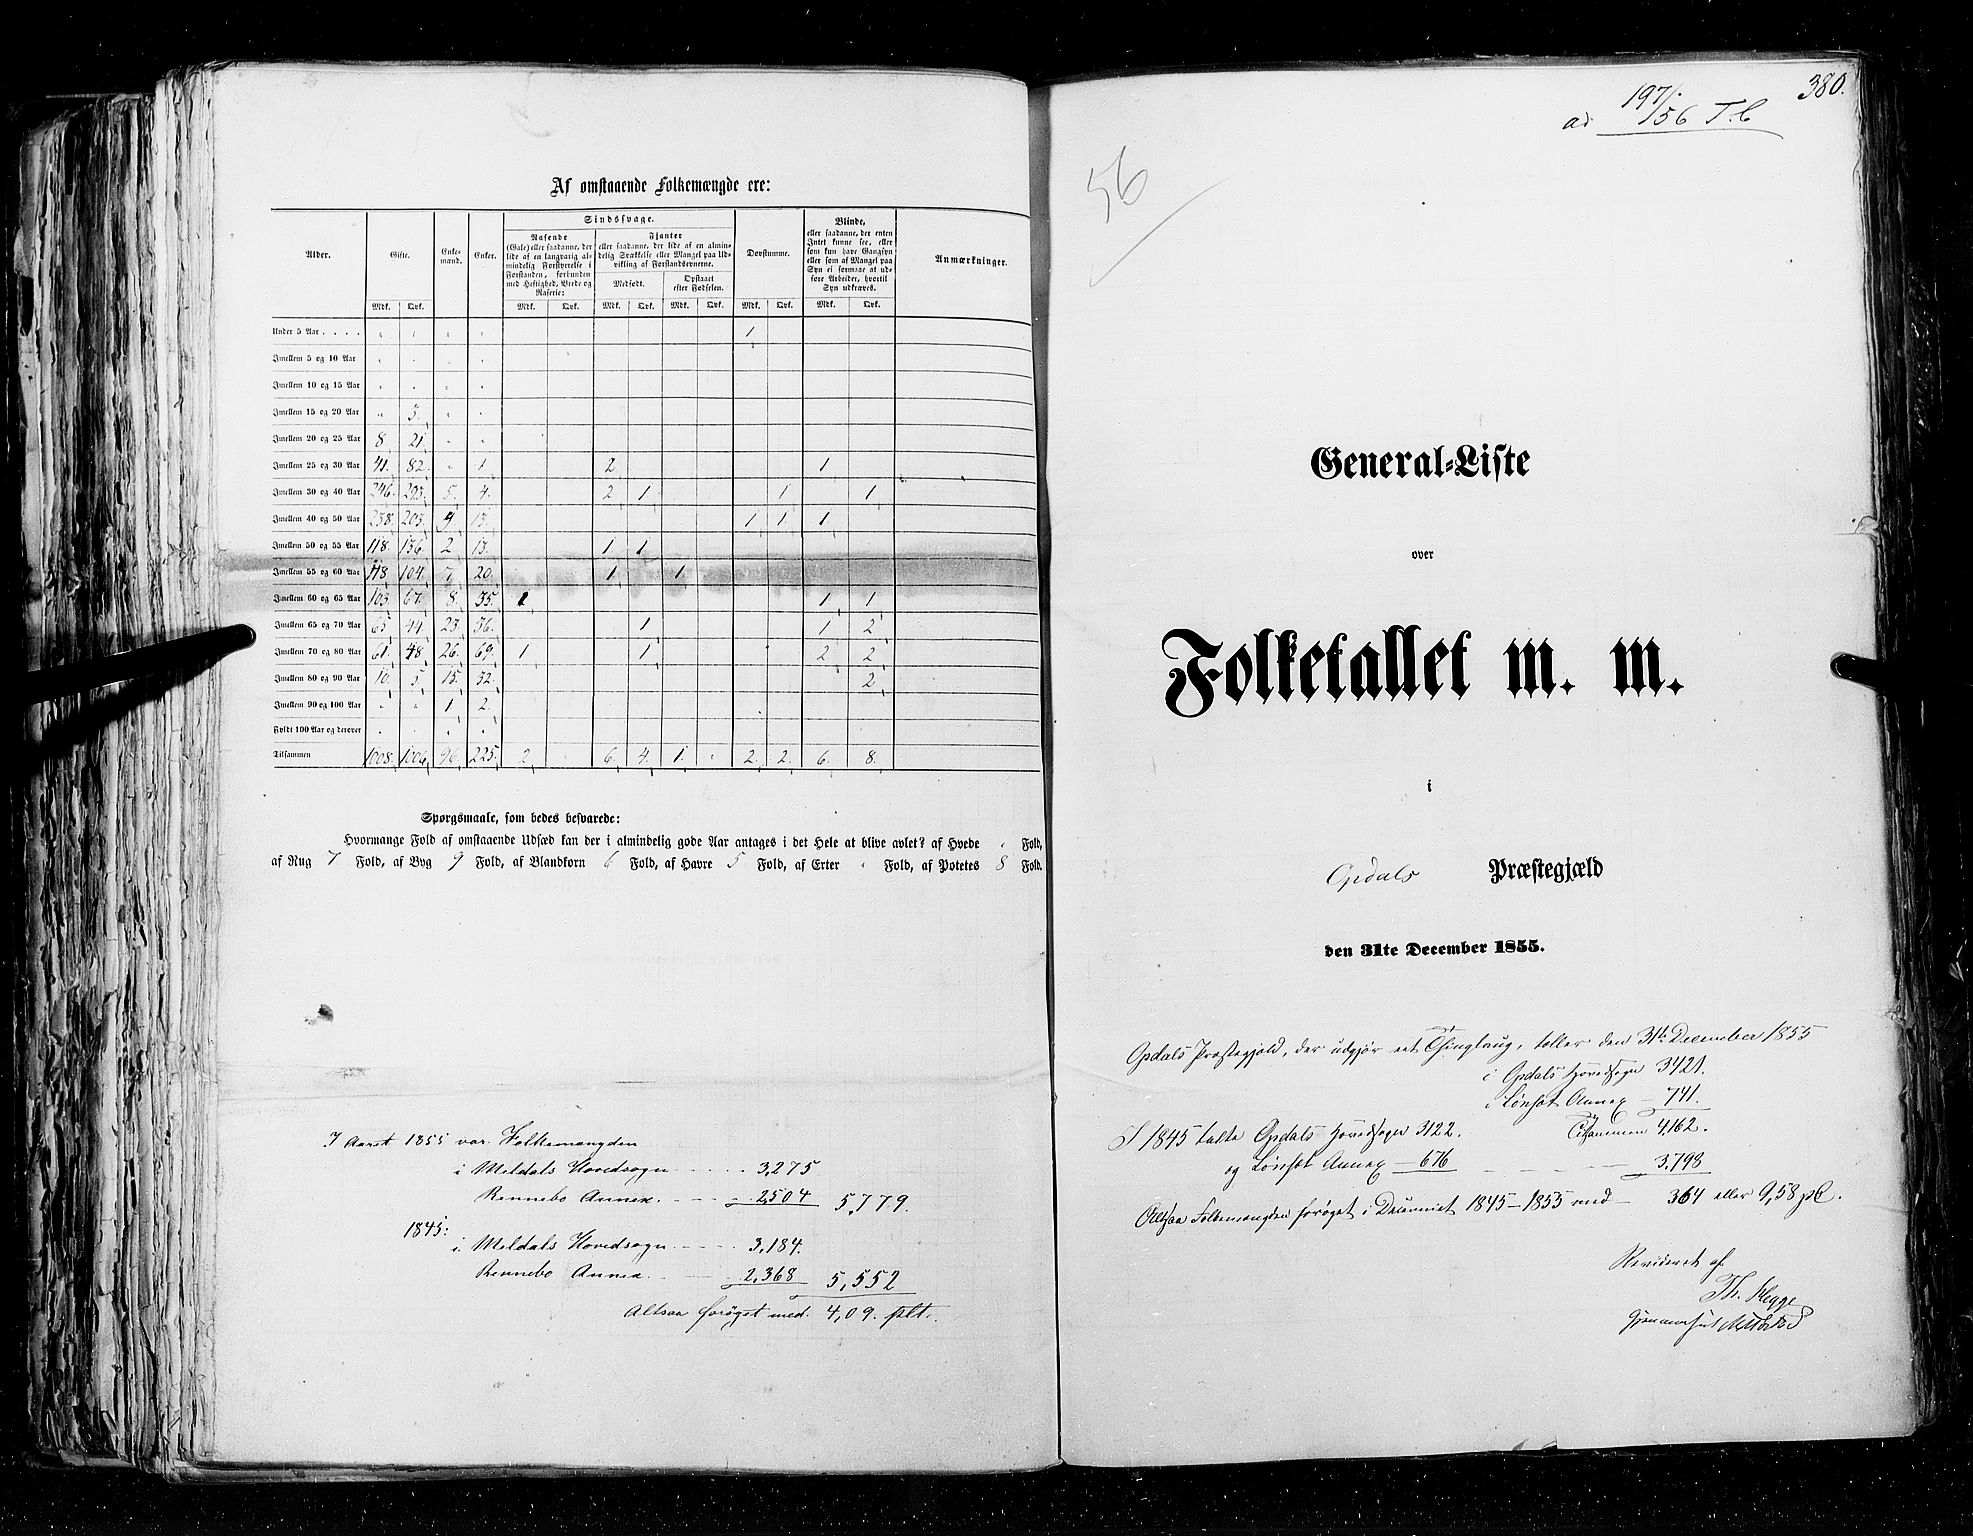 RA, Census 1855, vol. 5: Nordre Bergenhus amt, Romsdal amt og Søndre Trondhjem amt, 1855, p. 380